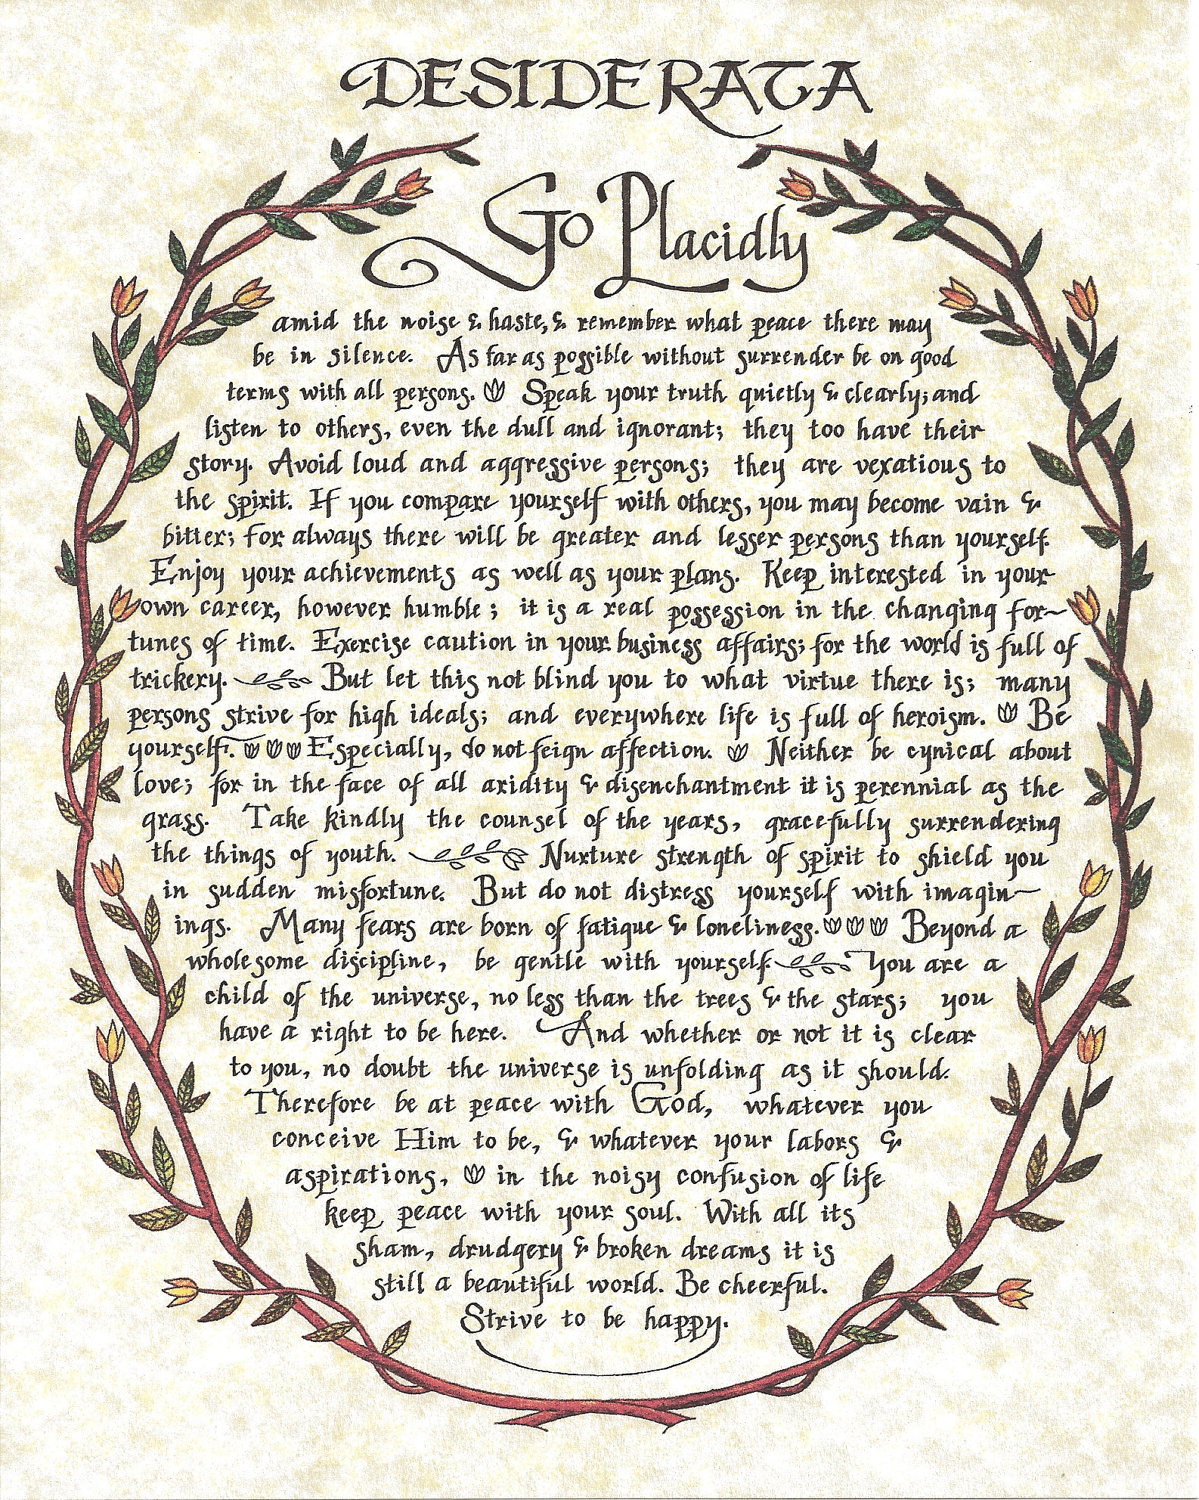 8 x 10 Desiderata Poem Art Print Antique Wreath